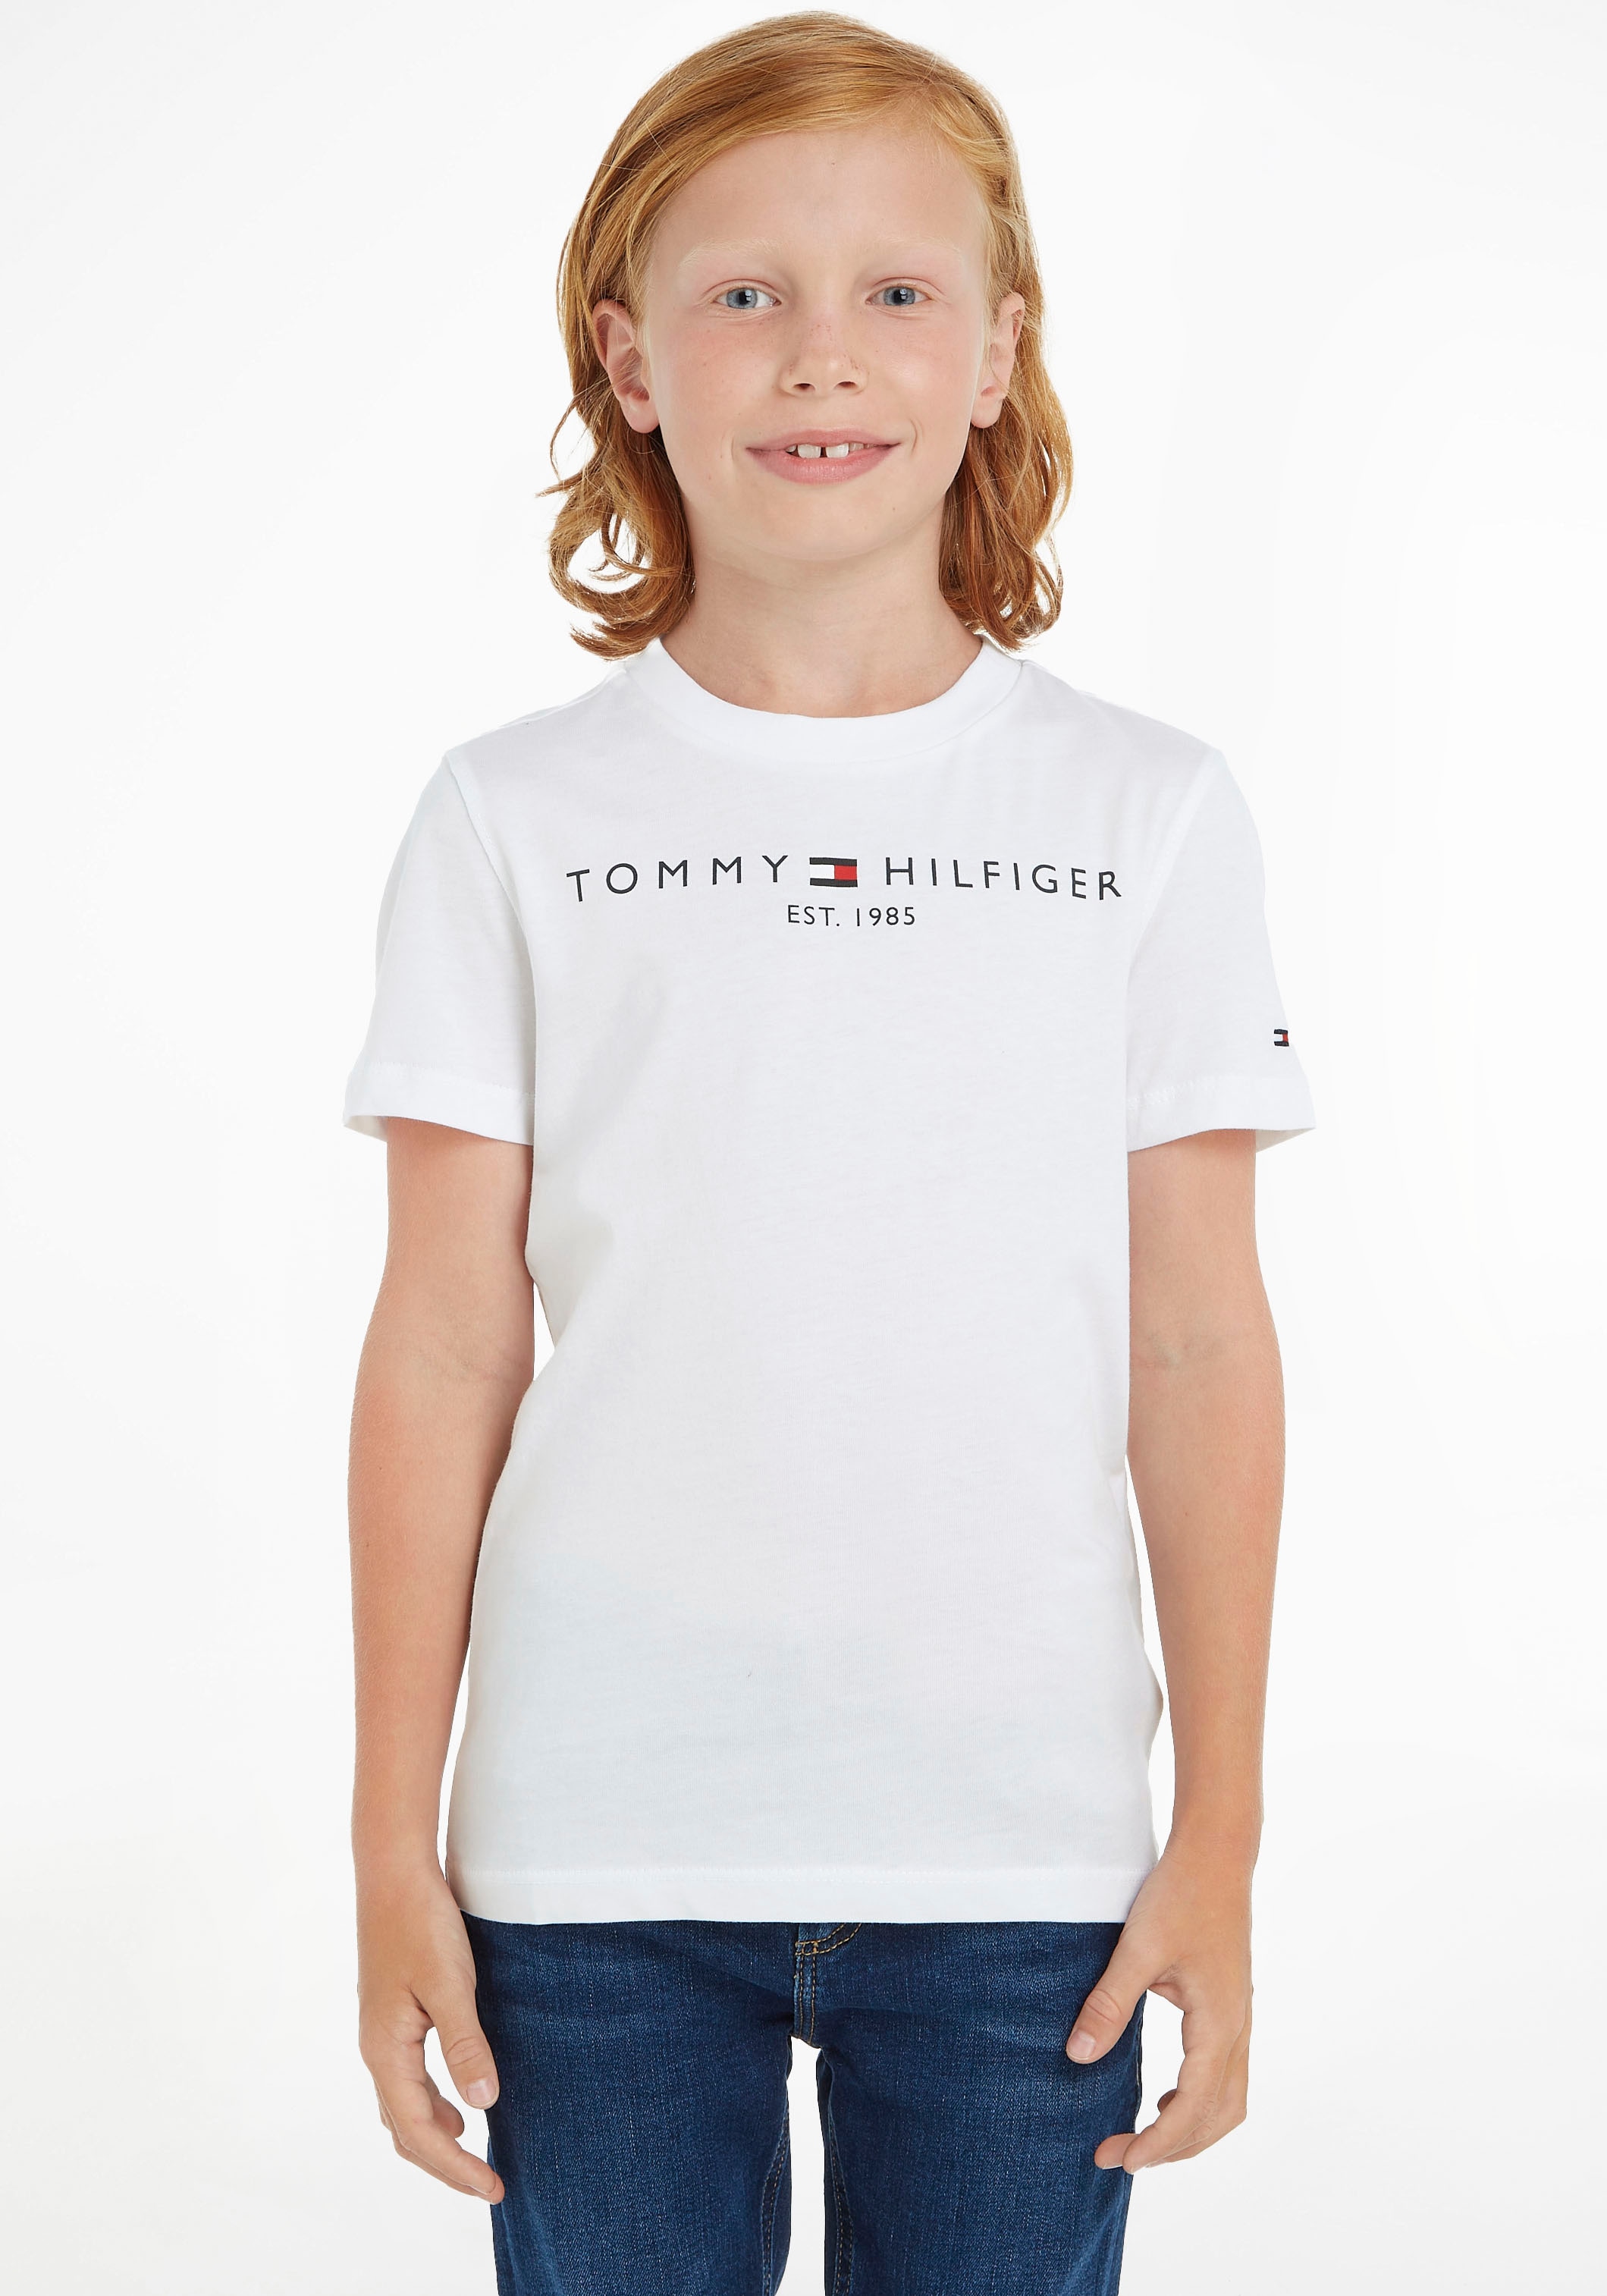 Tommy Hilfiger T-Shirt »ESSENTIAL TEE«, Kinder Kids Junior MiniMe,für  Jungen und Mädchen online bestellen